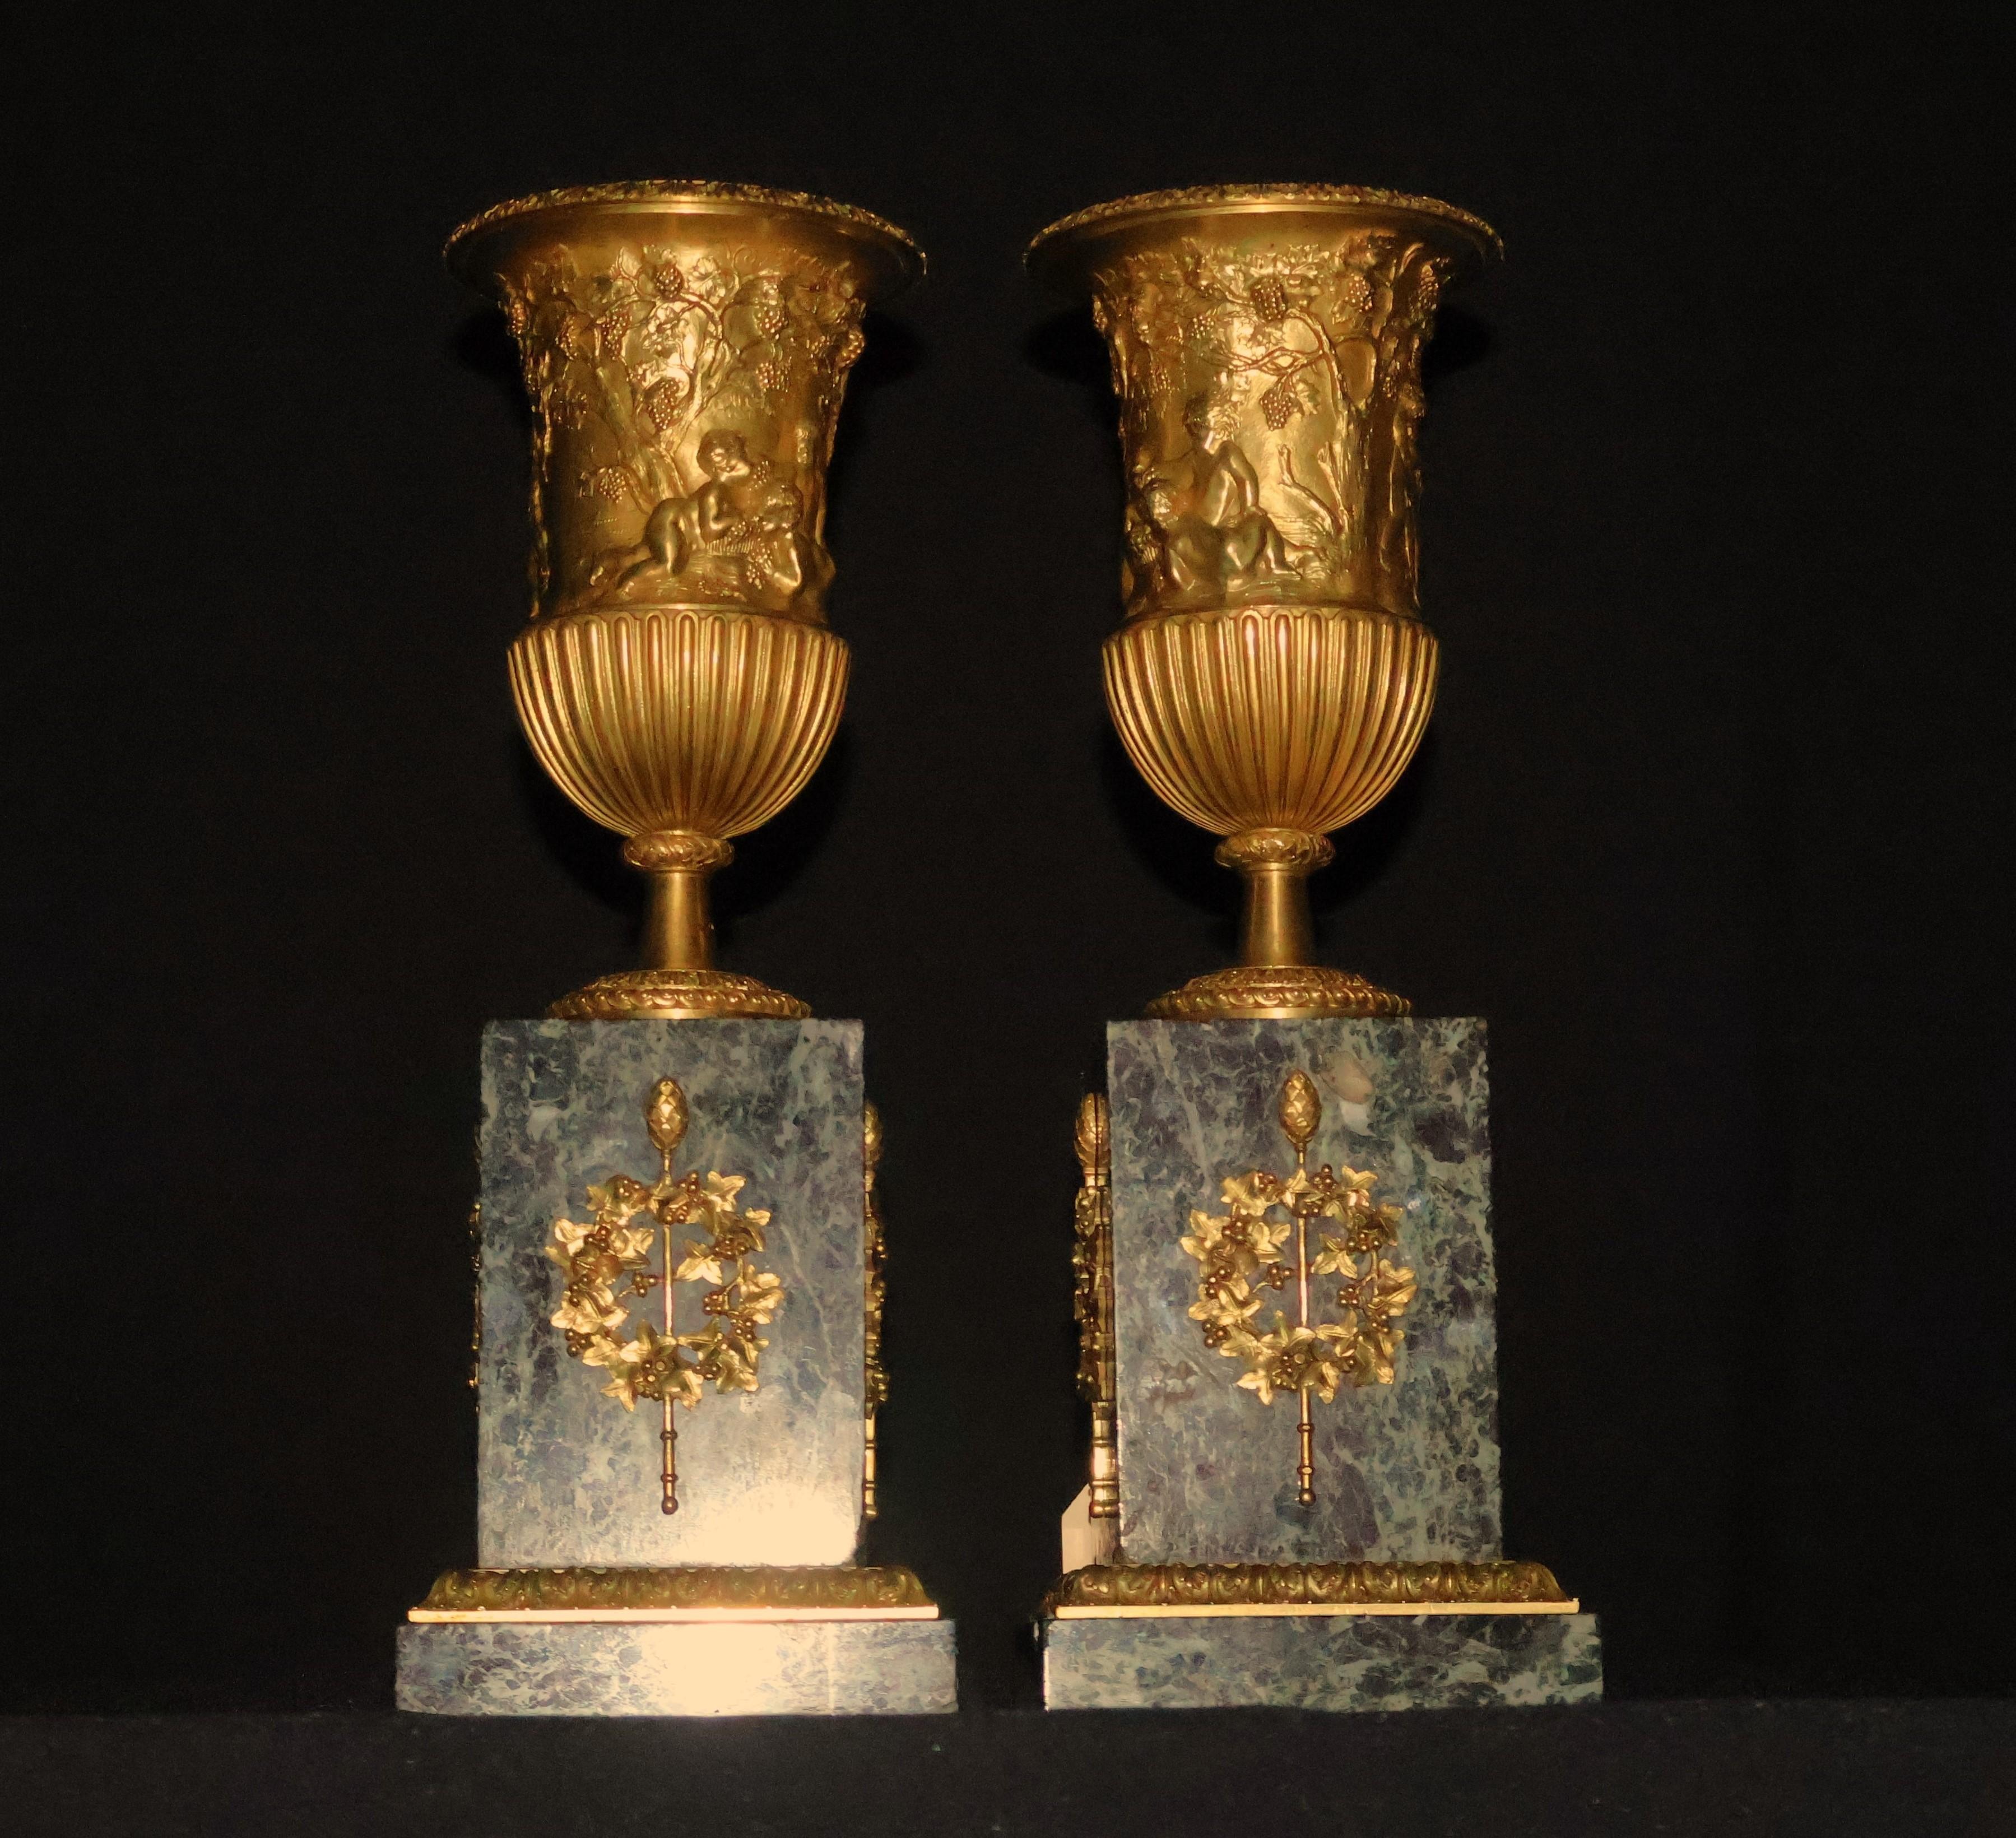 Paire d'urnes en bronze doré reposant sur un socle en marbre avec des montures en bronze doré (CW5595). La qualité est superbe, la chasse est 10 sur 10. France, vers 1870. Dimensions : Hauteur 15 1/2